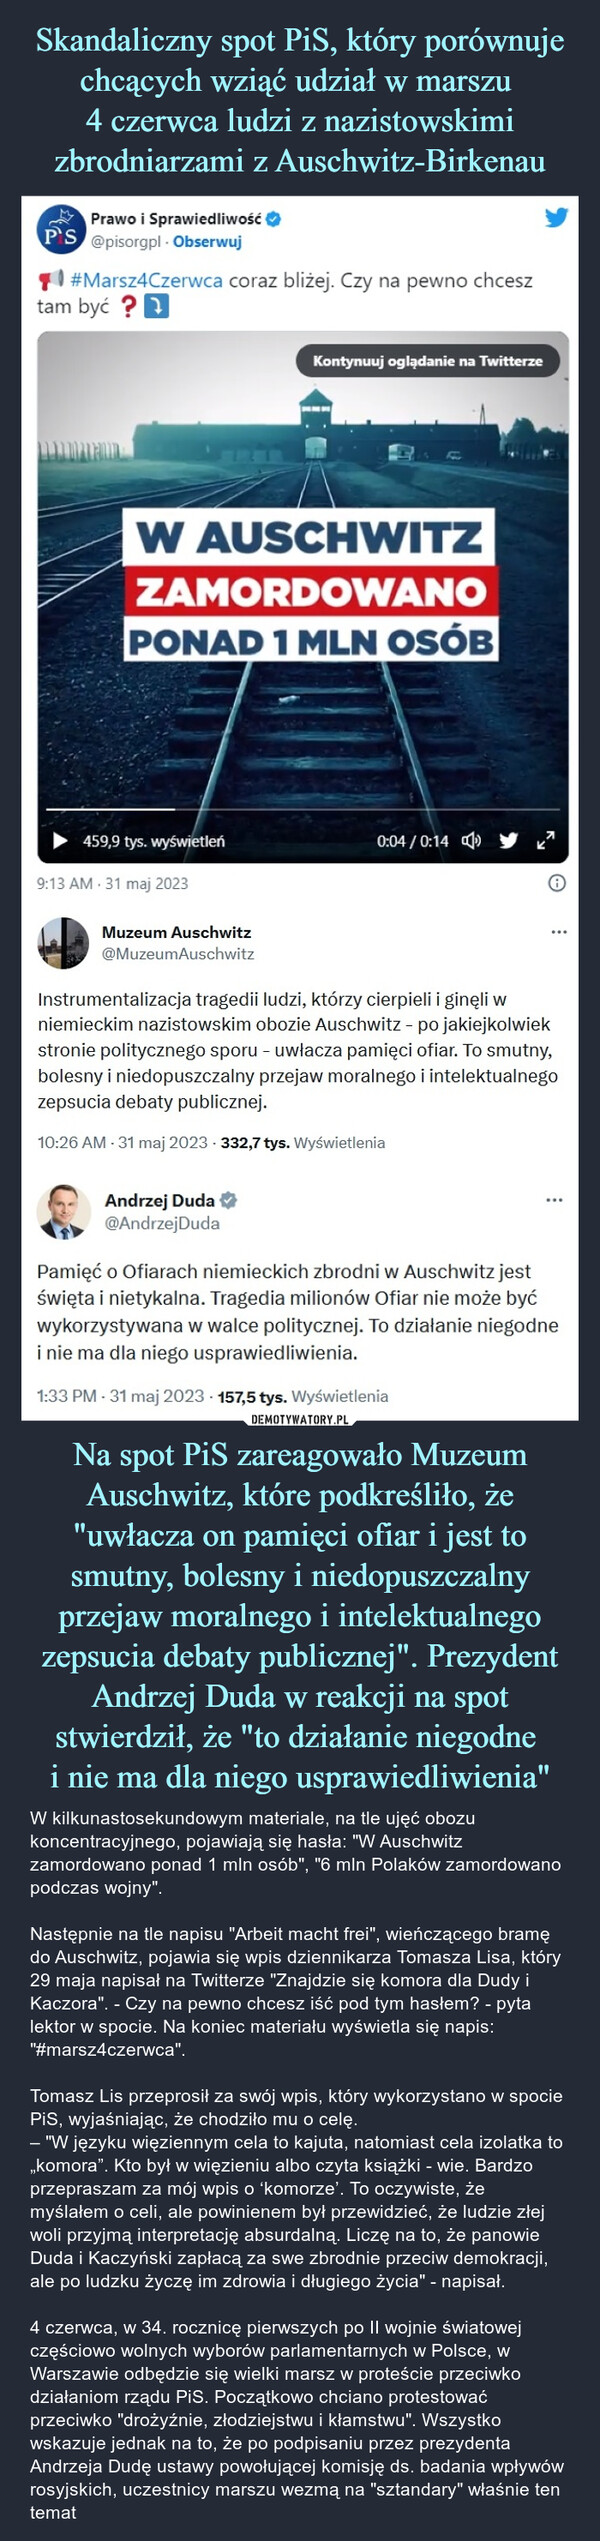 Na spot PiS zareagowało Muzeum Auschwitz, które podkreśliło, że "uwłacza on pamięci ofiar i jest to smutny, bolesny i niedopuszczalny przejaw moralnego i intelektualnego zepsucia debaty publicznej". Prezydent Andrzej Duda w reakcji na spot stwierdził, że "to działanie niegodne i nie ma dla niego usprawiedliwienia" – W kilkunastosekundowym materiale, na tle ujęć obozu koncentracyjnego, pojawiają się hasła: "W Auschwitz zamordowano ponad 1 mln osób", "6 mln Polaków zamordowano podczas wojny".Następnie na tle napisu "Arbeit macht frei", wieńczącego bramę do Auschwitz, pojawia się wpis dziennikarza Tomasza Lisa, który 29 maja napisał na Twitterze "Znajdzie się komora dla Dudy i Kaczora". - Czy na pewno chcesz iść pod tym hasłem? - pyta lektor w spocie. Na koniec materiału wyświetla się napis: "#marsz4czerwca".Tomasz Lis przeprosił za swój wpis, który wykorzystano w spocie PiS, wyjaśniając, że chodziło mu o celę. – "W języku więziennym cela to kajuta, natomiast cela izolatka to  „komora”. Kto był w więzieniu albo czyta książki - wie. Bardzo przepraszam za mój wpis o ‘komorze’. To oczywiste, że myślałem o celi, ale powinienem był przewidzieć, że ludzie złej woli przyjmą interpretację absurdalną. Liczę na to, że panowie Duda i Kaczyński zapłacą za swe zbrodnie przeciw demokracji, ale po ludzku życzę im zdrowia i długiego życia" - napisał.4 czerwca, w 34. rocznicę pierwszych po II wojnie światowej częściowo wolnych wyborów parlamentarnych w Polsce, w Warszawie odbędzie się wielki marsz w proteście przeciwko działaniom rządu PiS. Początkowo chciano protestować przeciwko "drożyźnie, złodziejstwu i kłamstwu". Wszystko wskazuje jednak na to, że po podpisaniu przez prezydenta Andrzeja Dudę ustawy powołującej komisję ds. badania wpływów rosyjskich, uczestnicy marszu wezmą na "sztandary" właśnie ten temat M Prawo i SprawiedliwośćP'S @pisorgpl. Obserwuj#Marsz4Czerwca coraz bliżej. Czy na pewno chcesztam być?W AUSCHWITZZAMORDOWANOPONAD 1 MLN OSÓB459,9 tys. wyświetleń9:13 AM 31 maj 2023Muzeum Auschwitz@MuzeumAuschwitzKontynuuj oglądanie na TwitterzeAndrzej Duda@Andrzej Duda0:04/0:14Instrumentalizacja tragedii ludzi, którzy cierpieli i ginęli wniemieckim nazistowskim obozie Auschwitz - po jakiejkolwiekstronie politycznego sporu - uwłacza pamięci ofiar. To smutny,bolesny i niedopuszczalny przejaw moralnego i intelektualnegozepsucia debaty publicznej.10:26 AM - 31 maj 2023-332,7 tys. WyświetleniaPamięć o Ofiarach niemieckich zbrodni w Auschwitz jestświęta i nietykalna. Tragedia milionów Ofiar nie może byćwykorzystywana w walce politycznej. To działanie niegodnei nie ma dla niego usprawiedliwienia.1:33 PM - 31 maj 2023 157,5 tys. Wyświetlenia